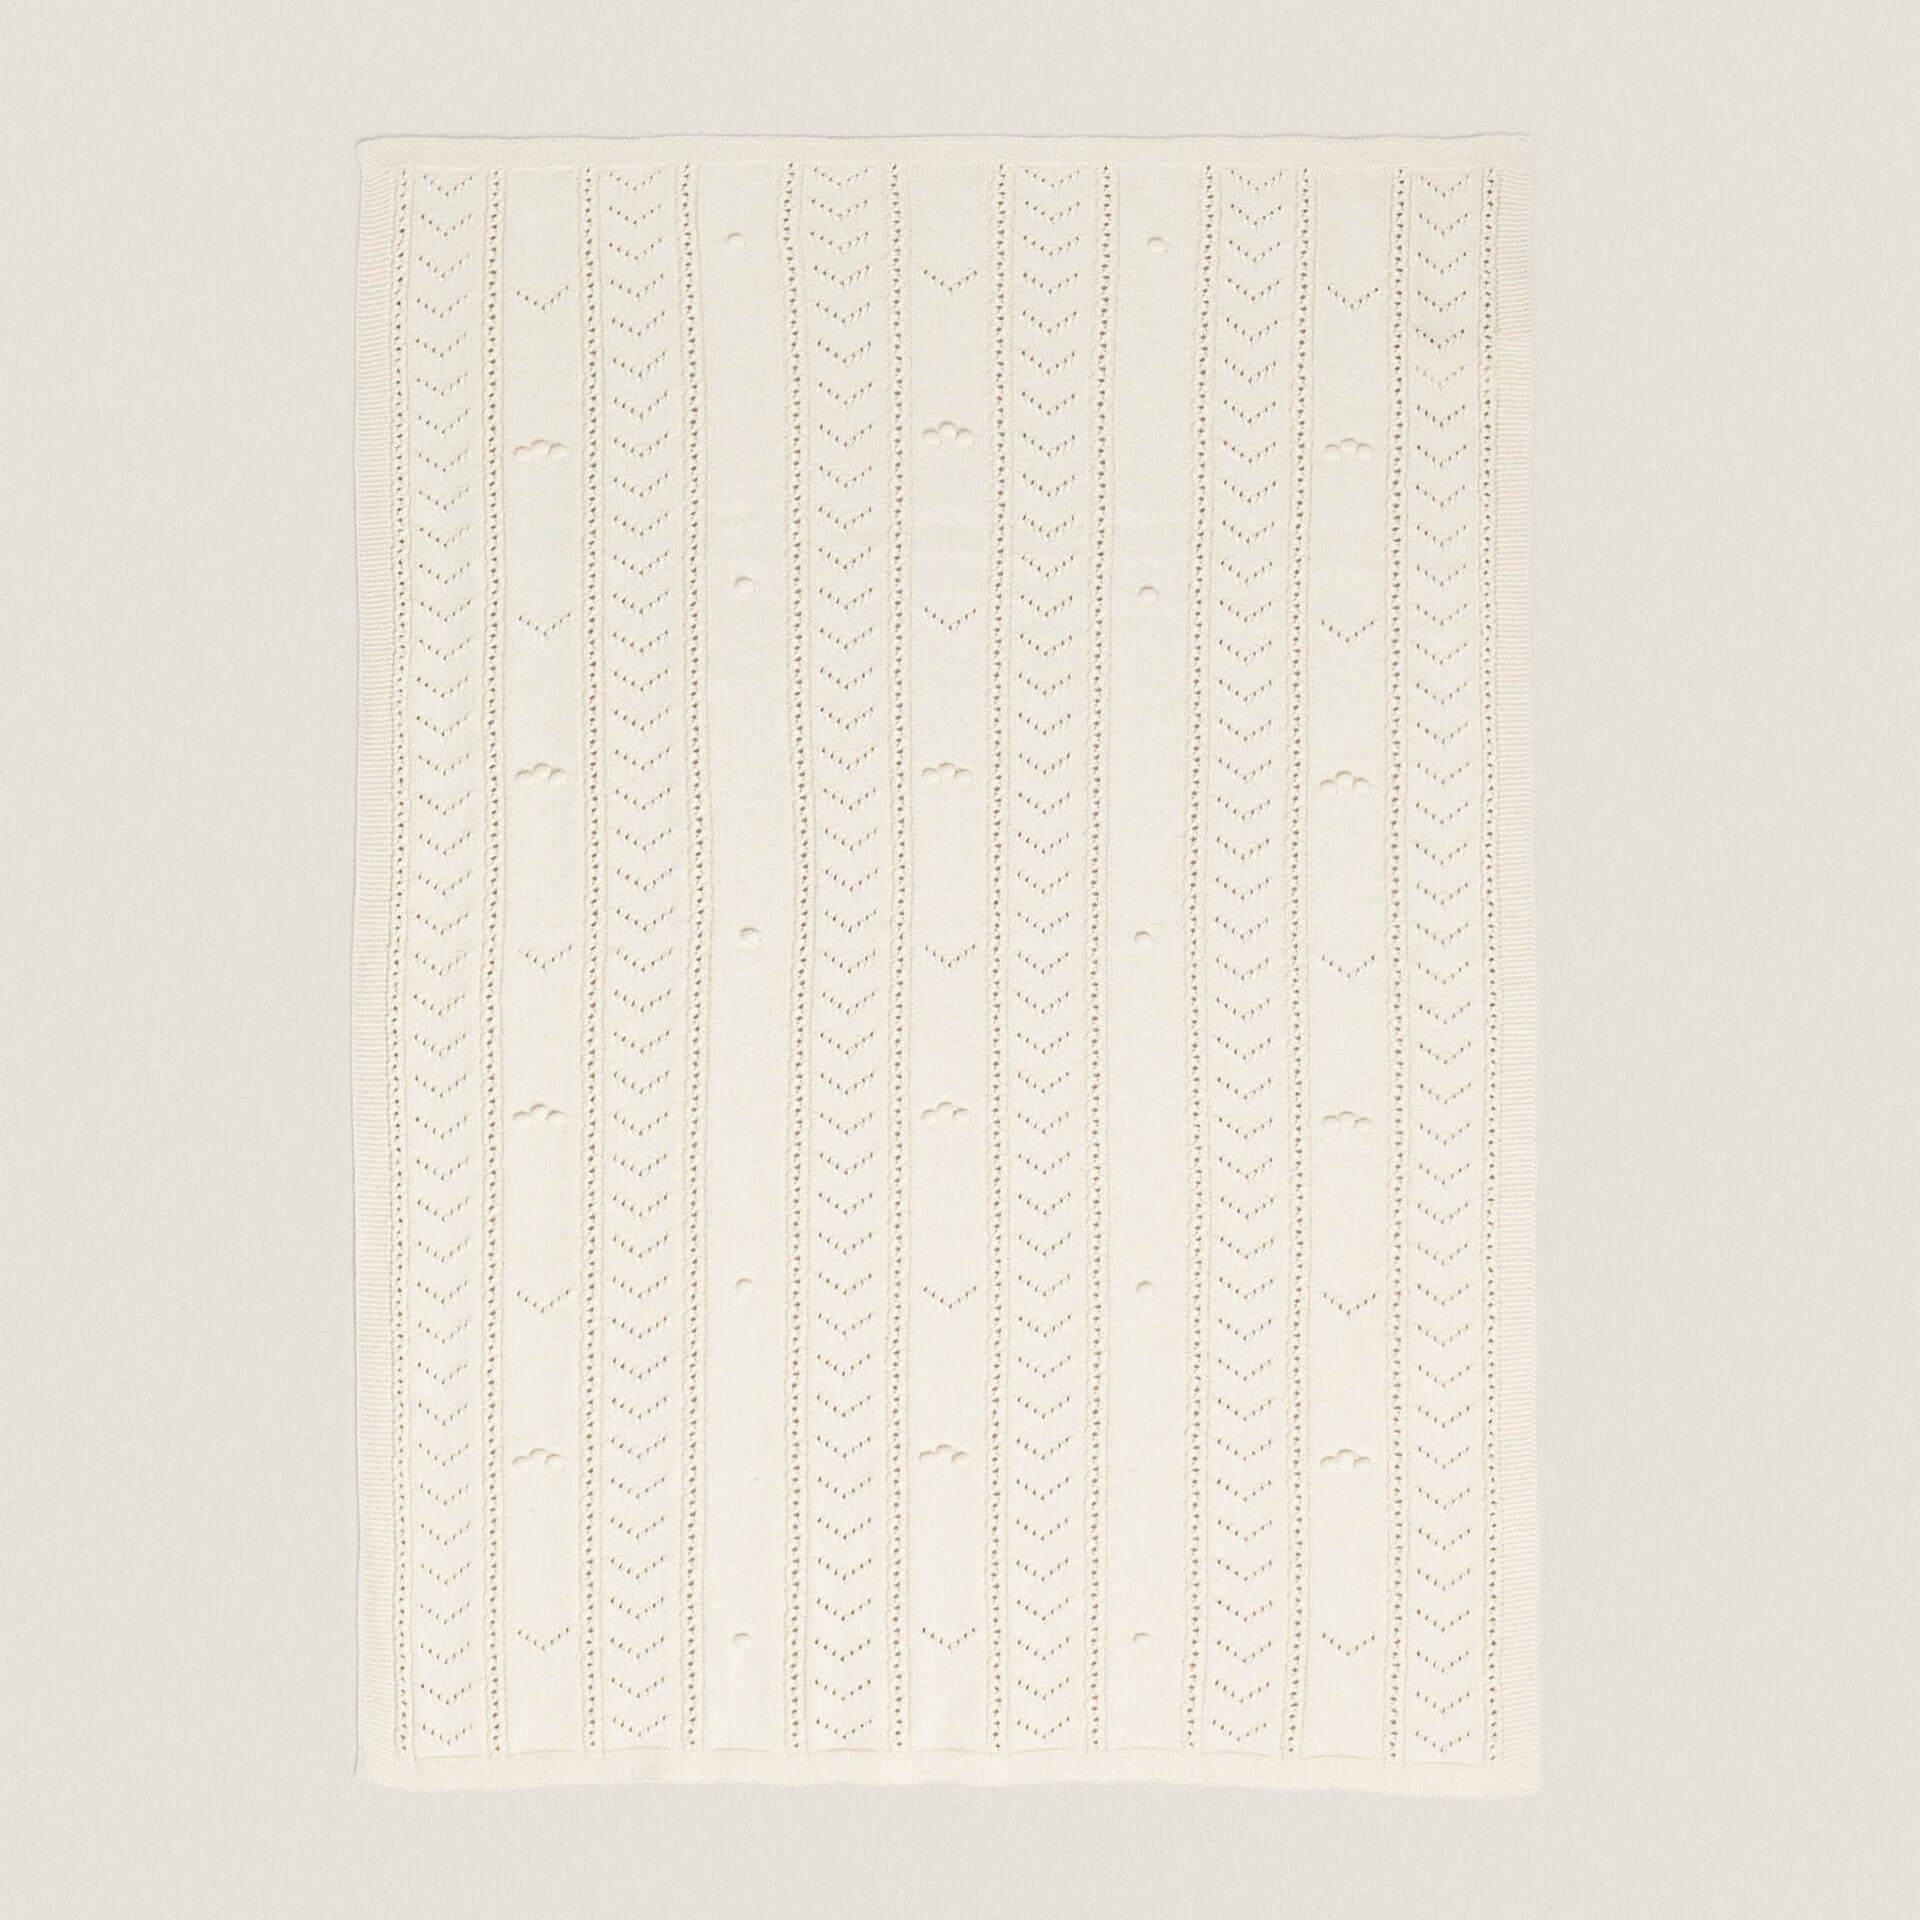 Детское одеяло Zara Home Open-Knit, белый хлопковое муслиновое одеяло 6 слоев для пеленания мягкое детское одеяло покрывало для коляски банное полотенце детское одеяло прямая п